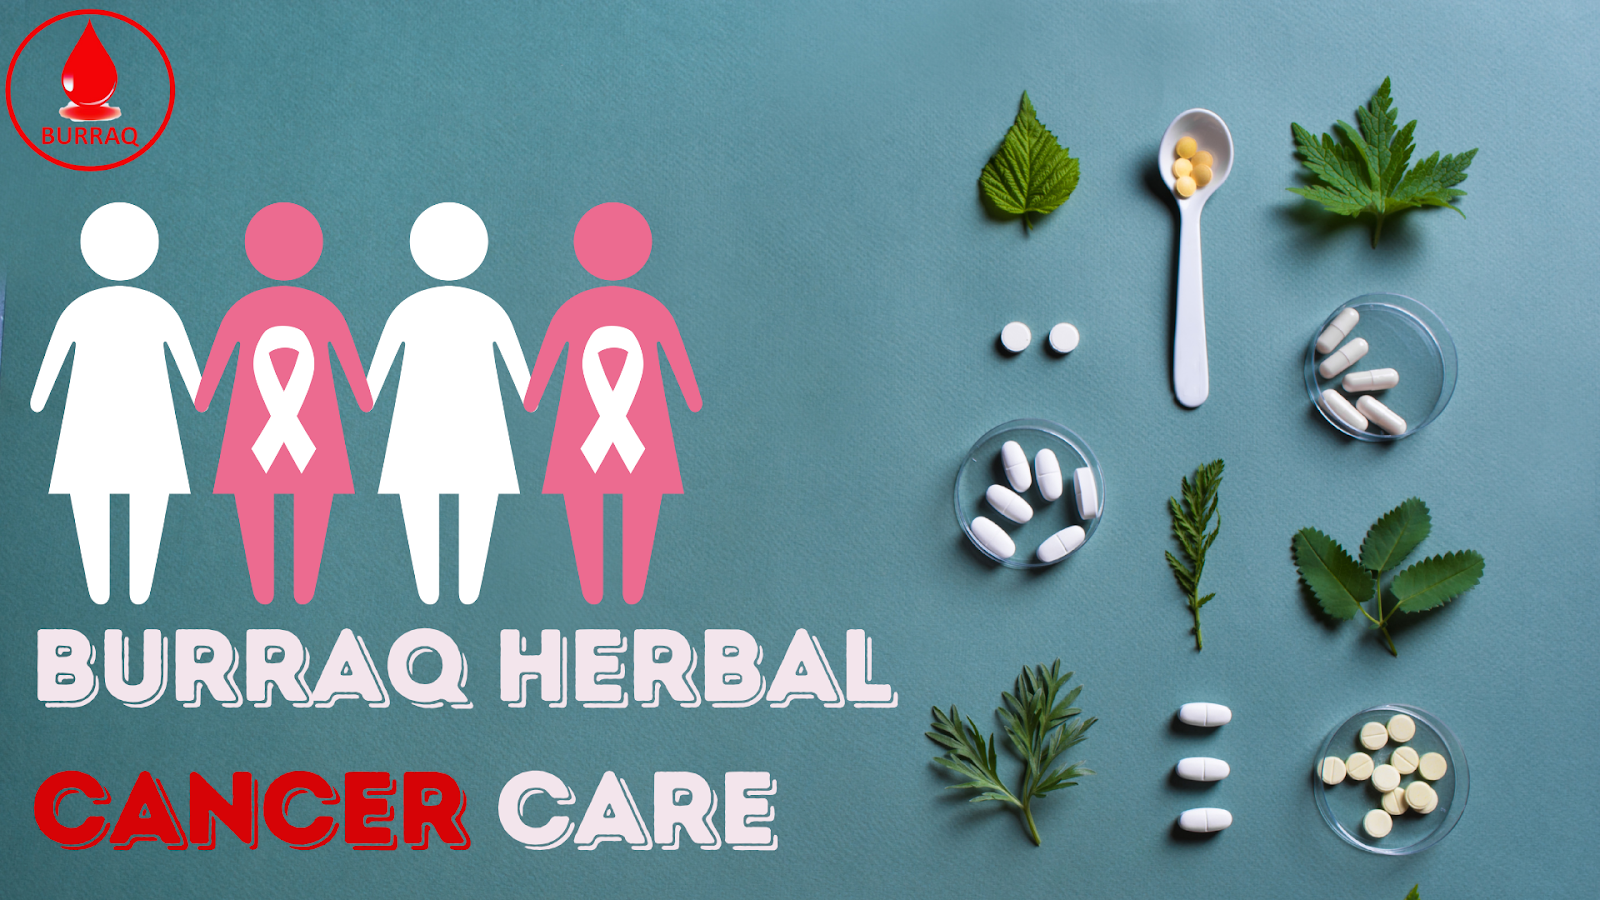 Burraq Herbal Cancer Treatment